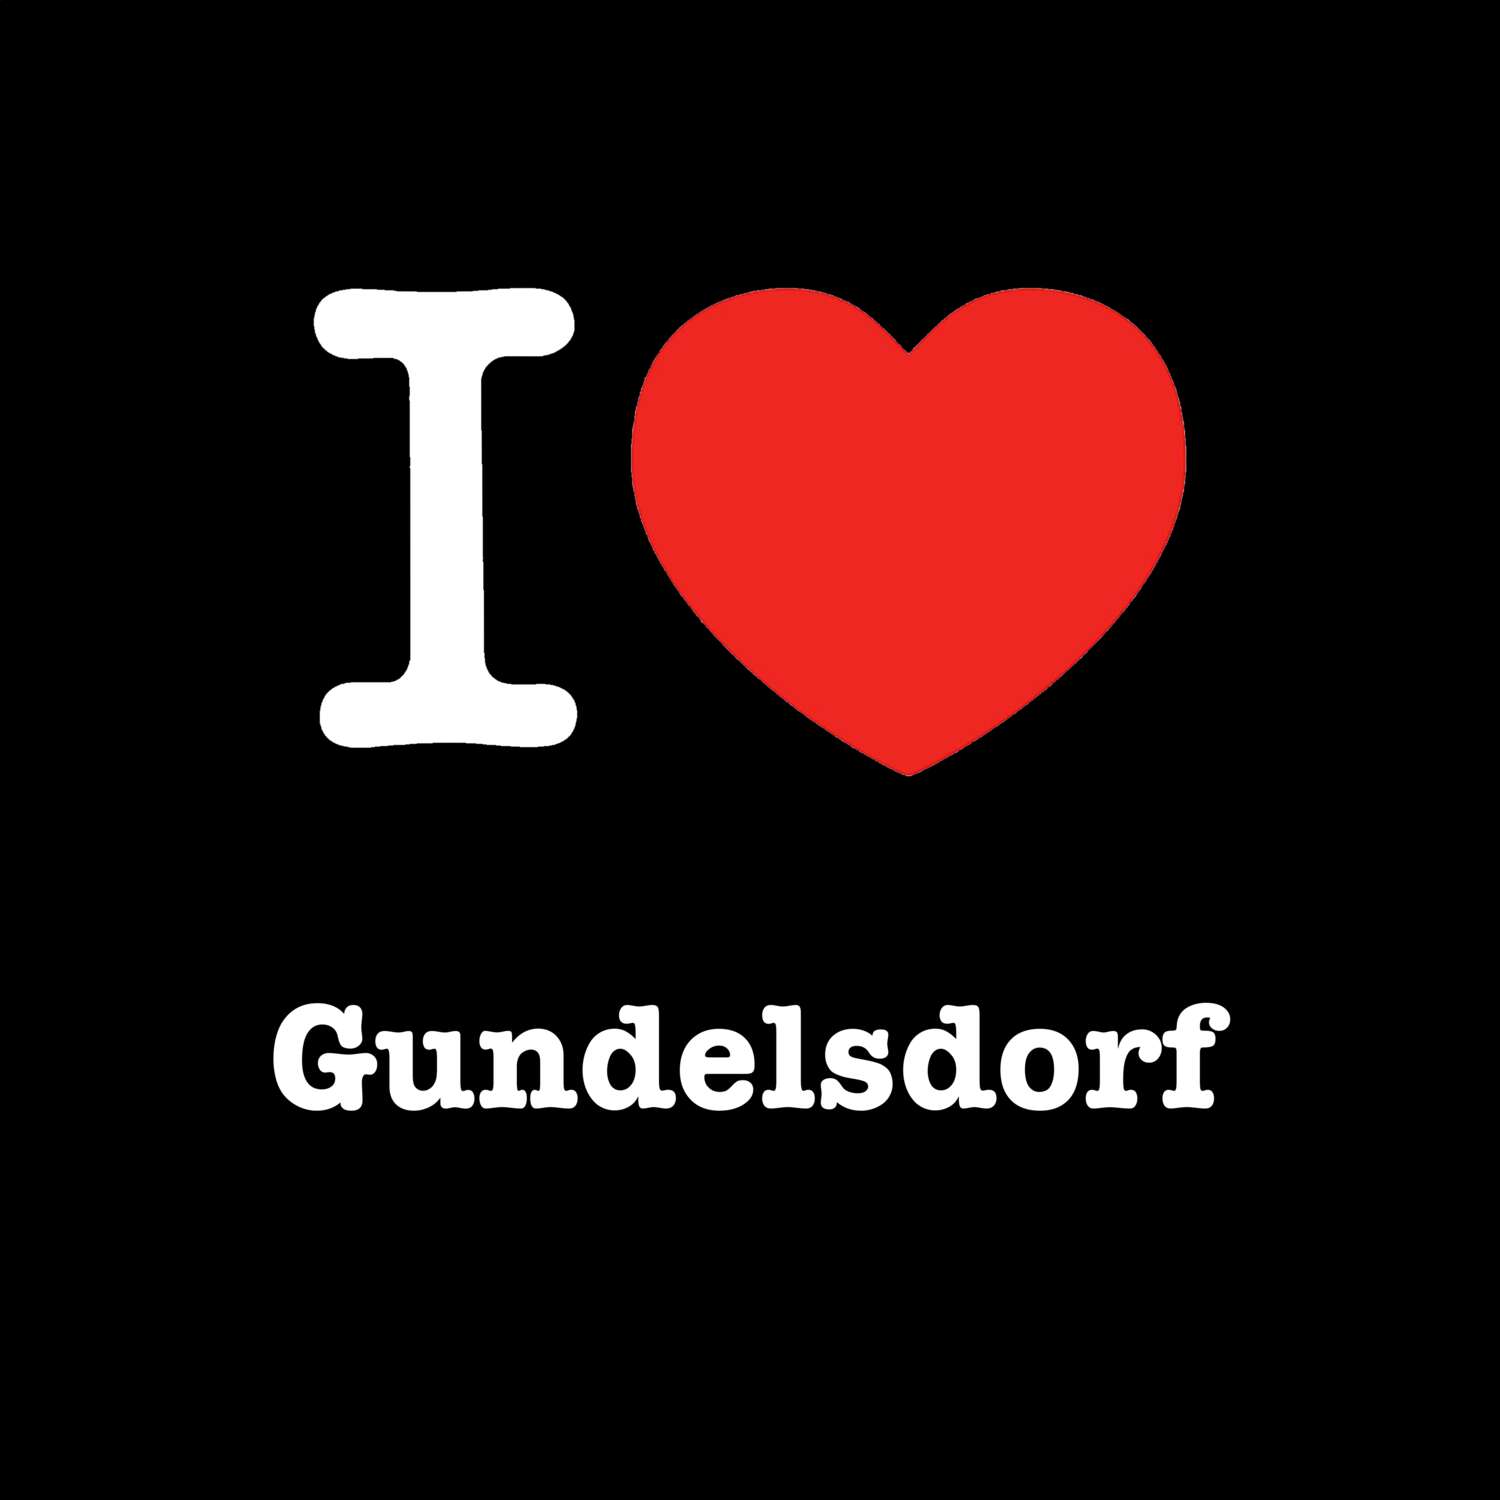 Gundelsdorf T-Shirt »I love«